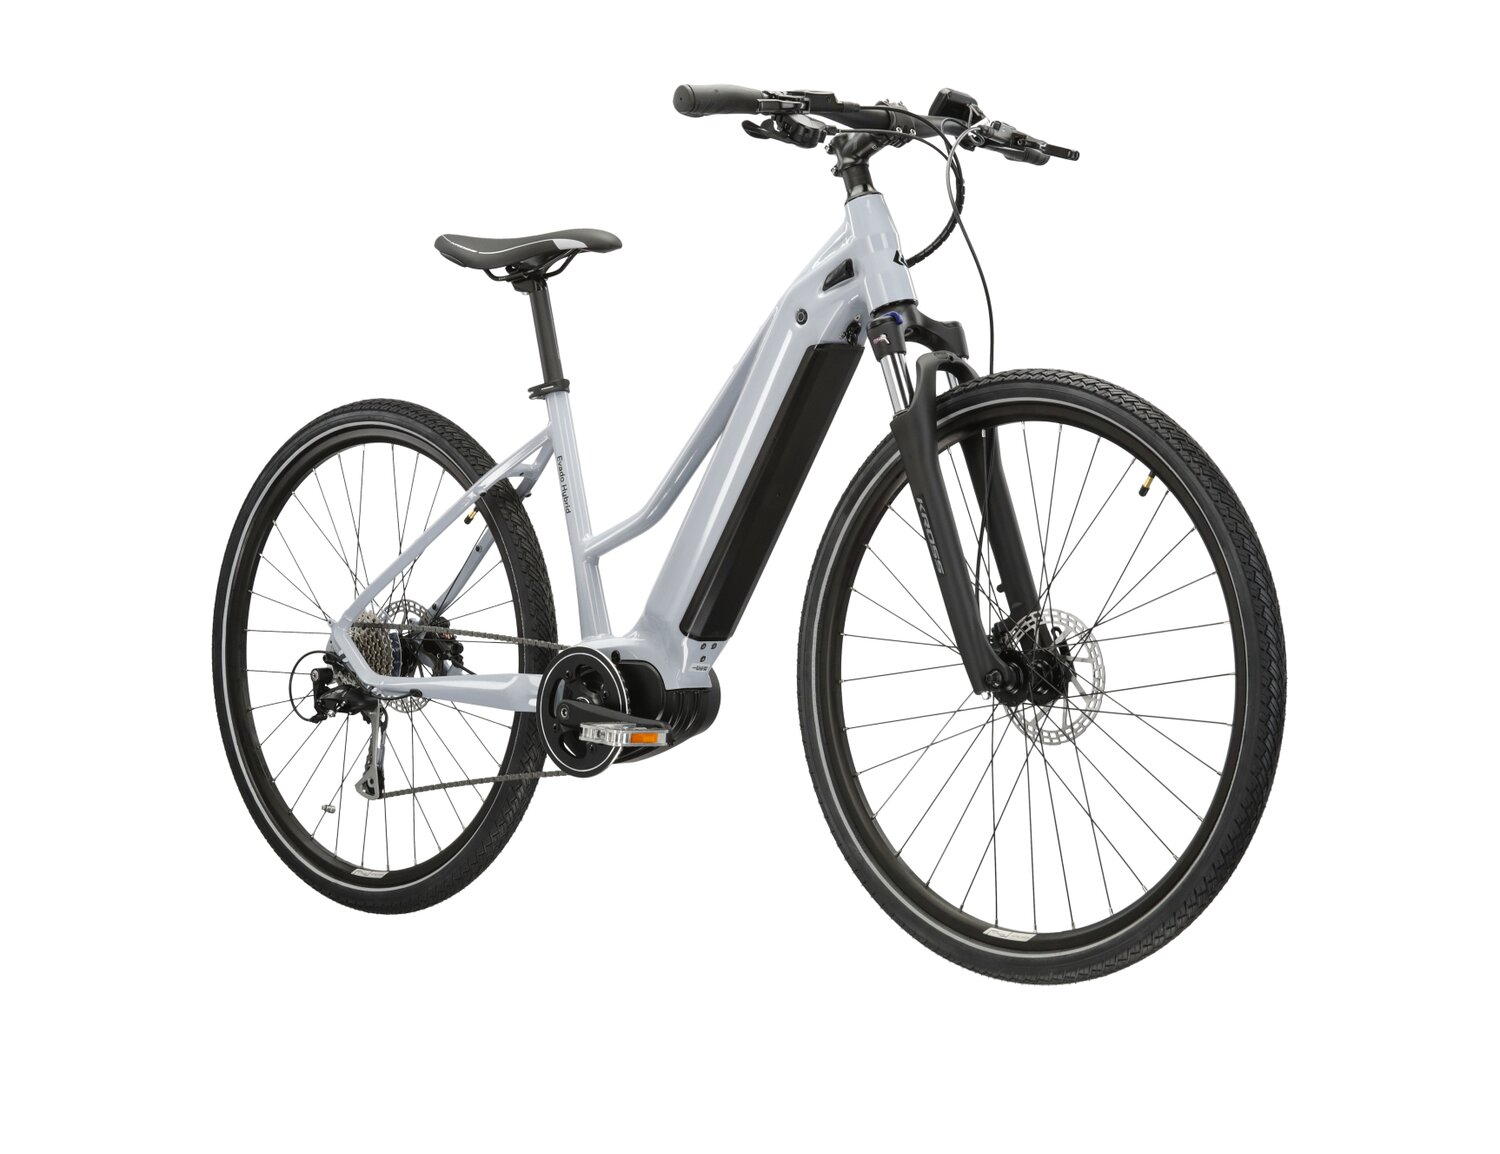  Elektryczny rower crossowy KROSS Evado Hybrid 2.0 730 Wh UNI na aluminiowej ramie w kolorze szarym wyposażony w osprzęt Shimano i napęd elektryczny Bafang